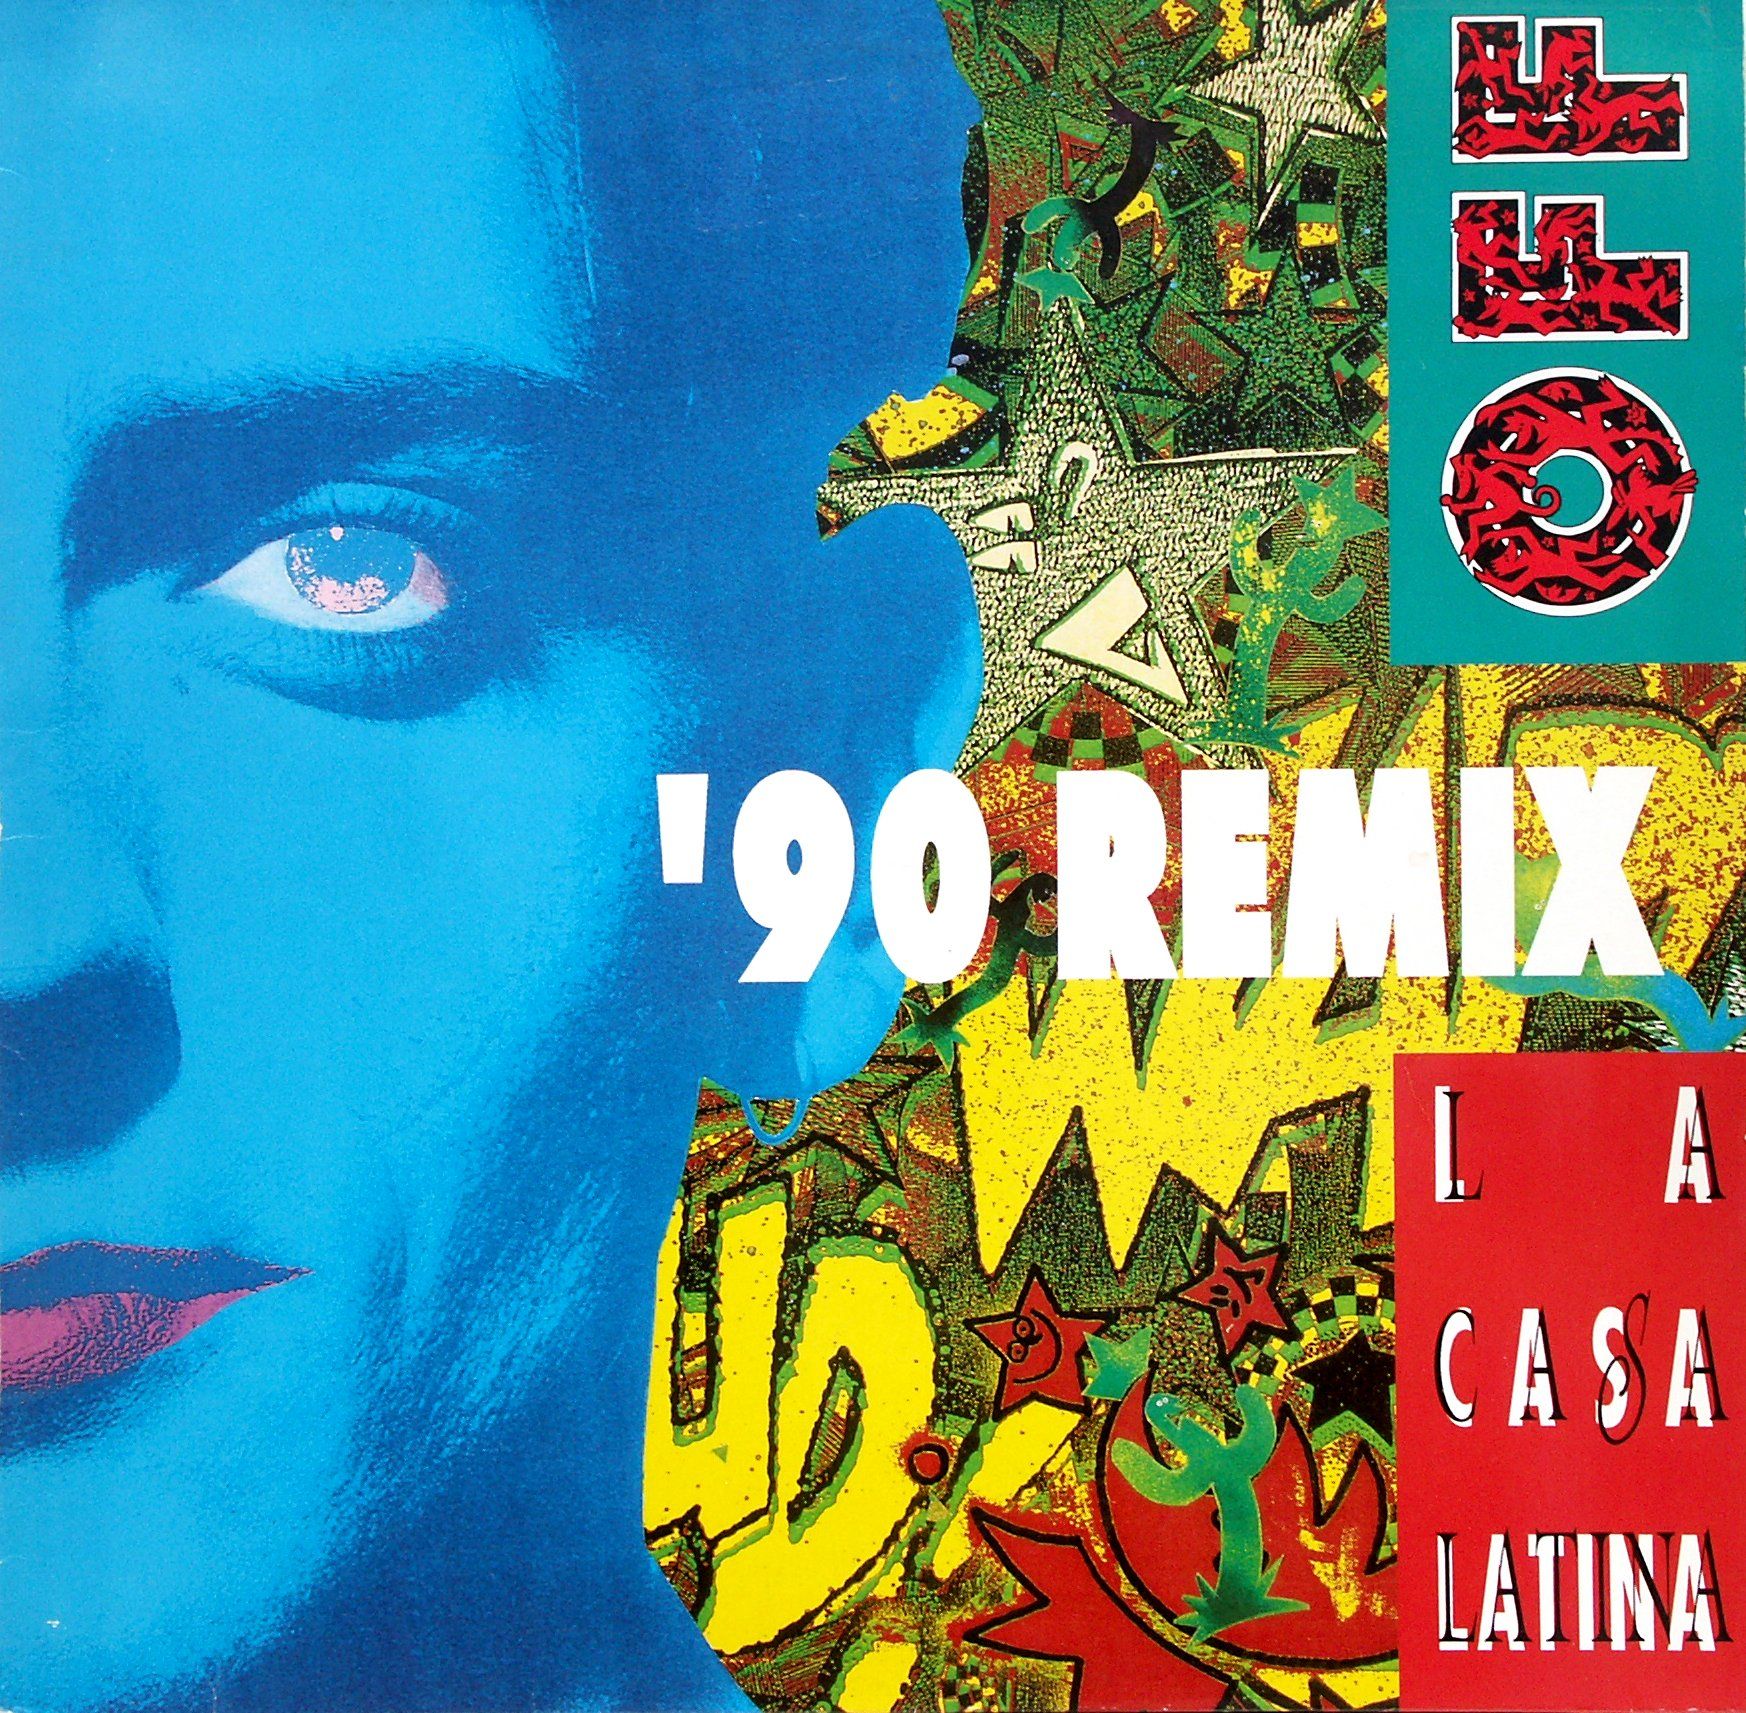 off la casa latina '90 remix